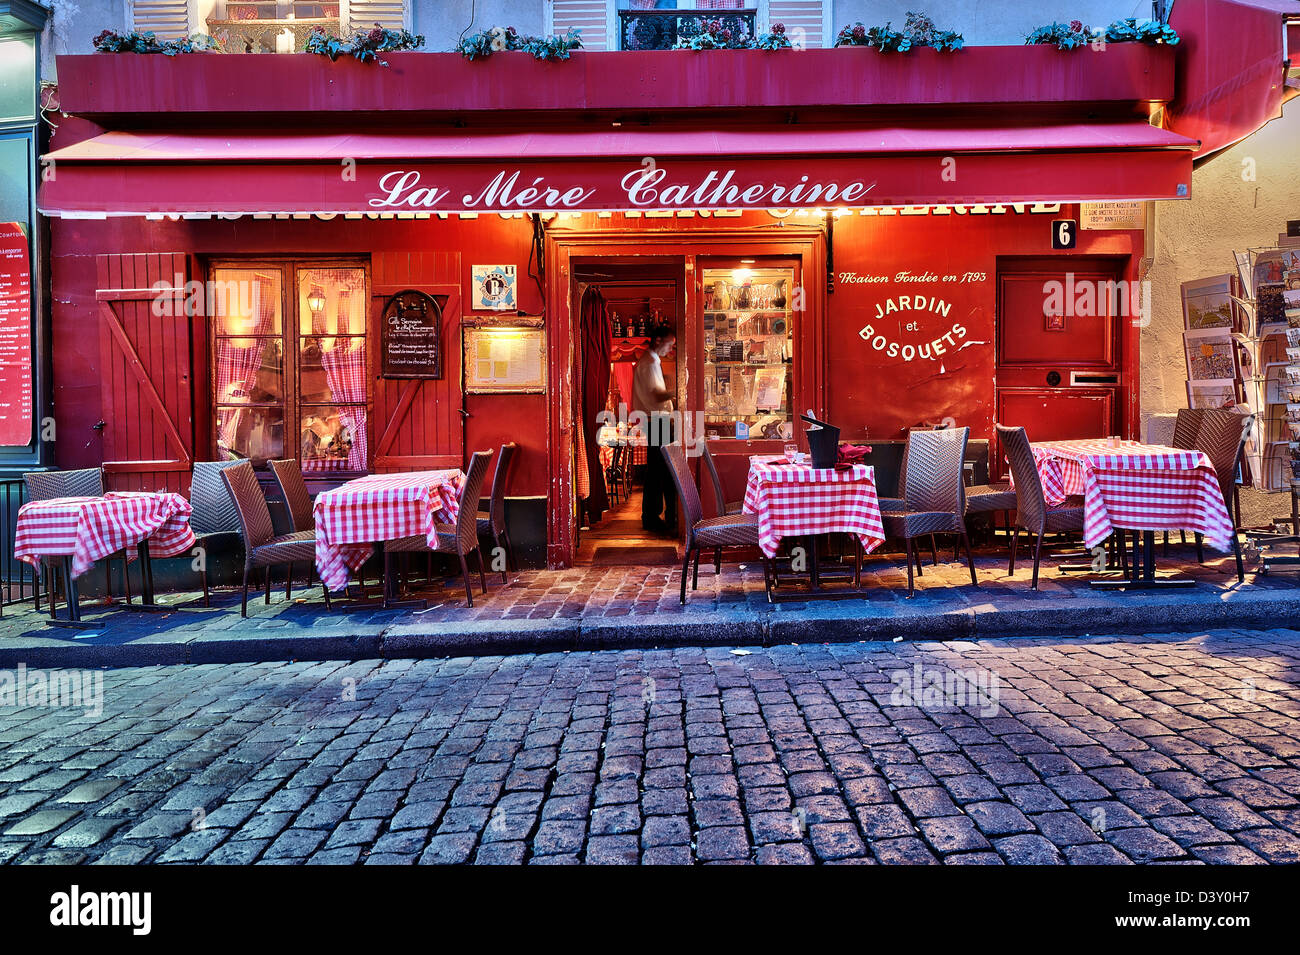 Maison Catherine and restaurant “La Mère Catherine” near Place du Tertre, Montmartre, Paris, France Stock Photo